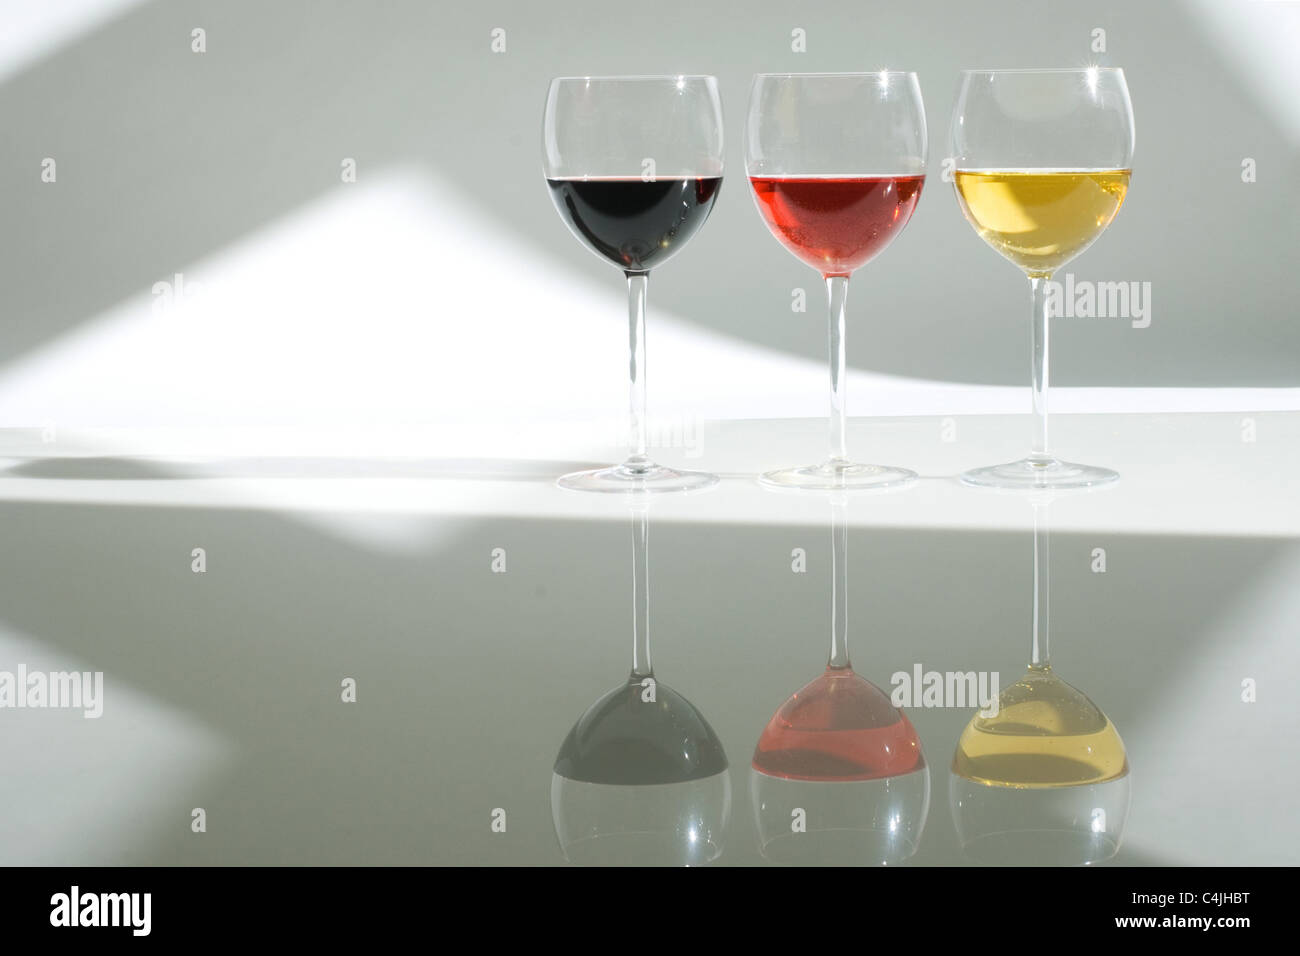 wineglasses Stock Photo